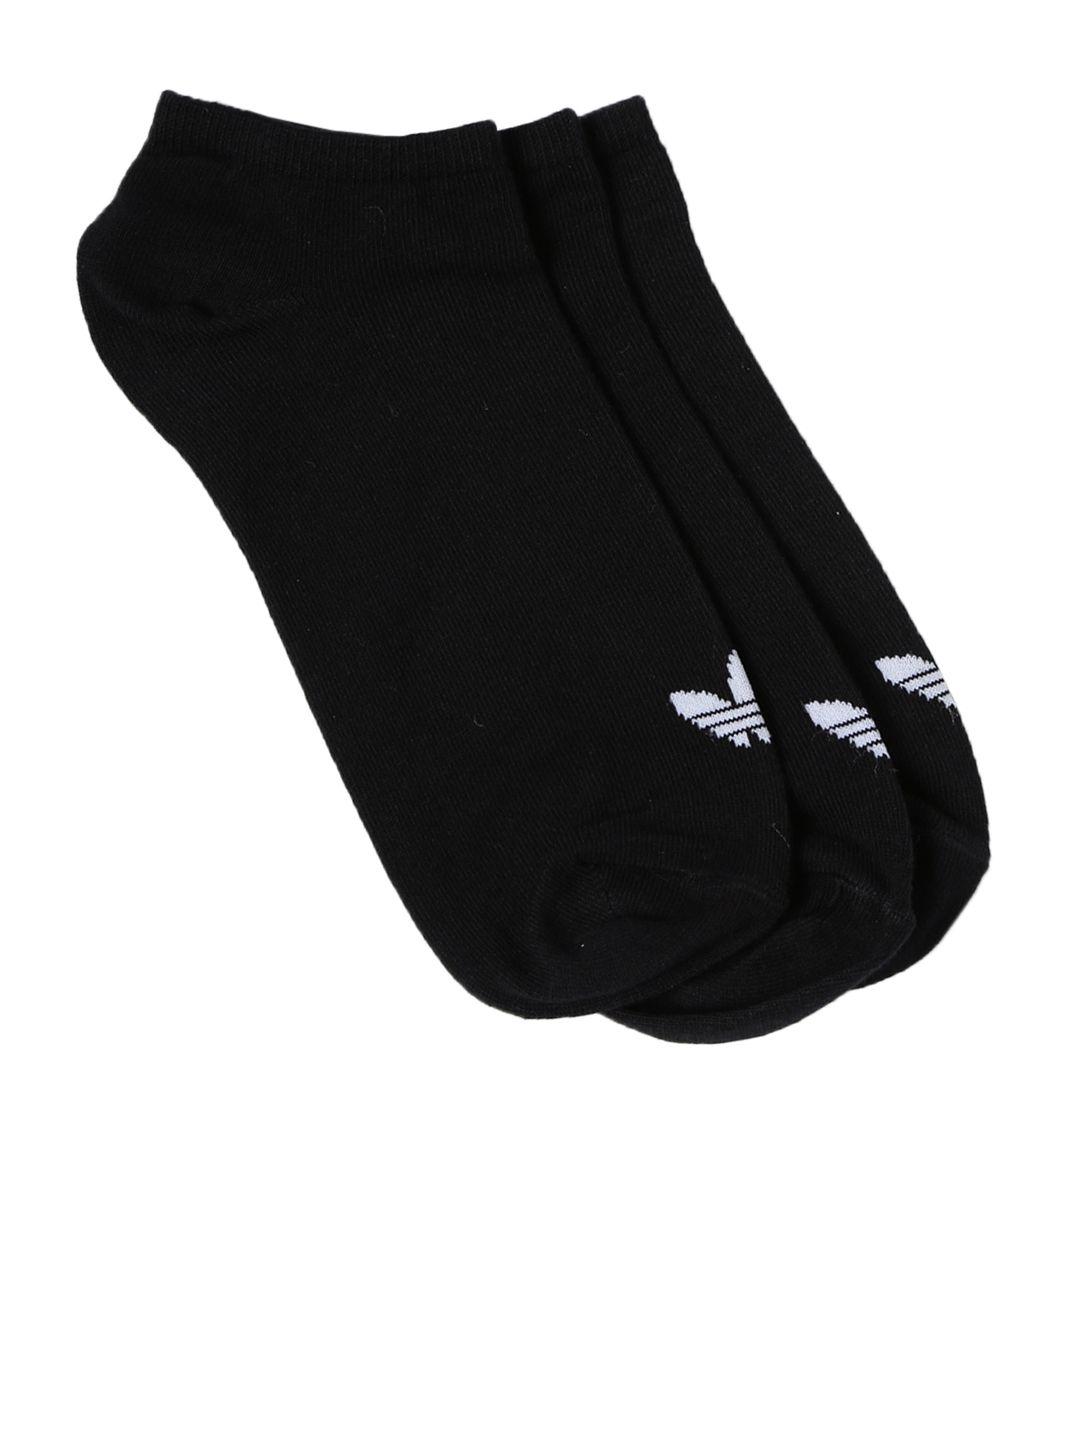 adidas-unisex-black-s20274-ankle-length-running-socks